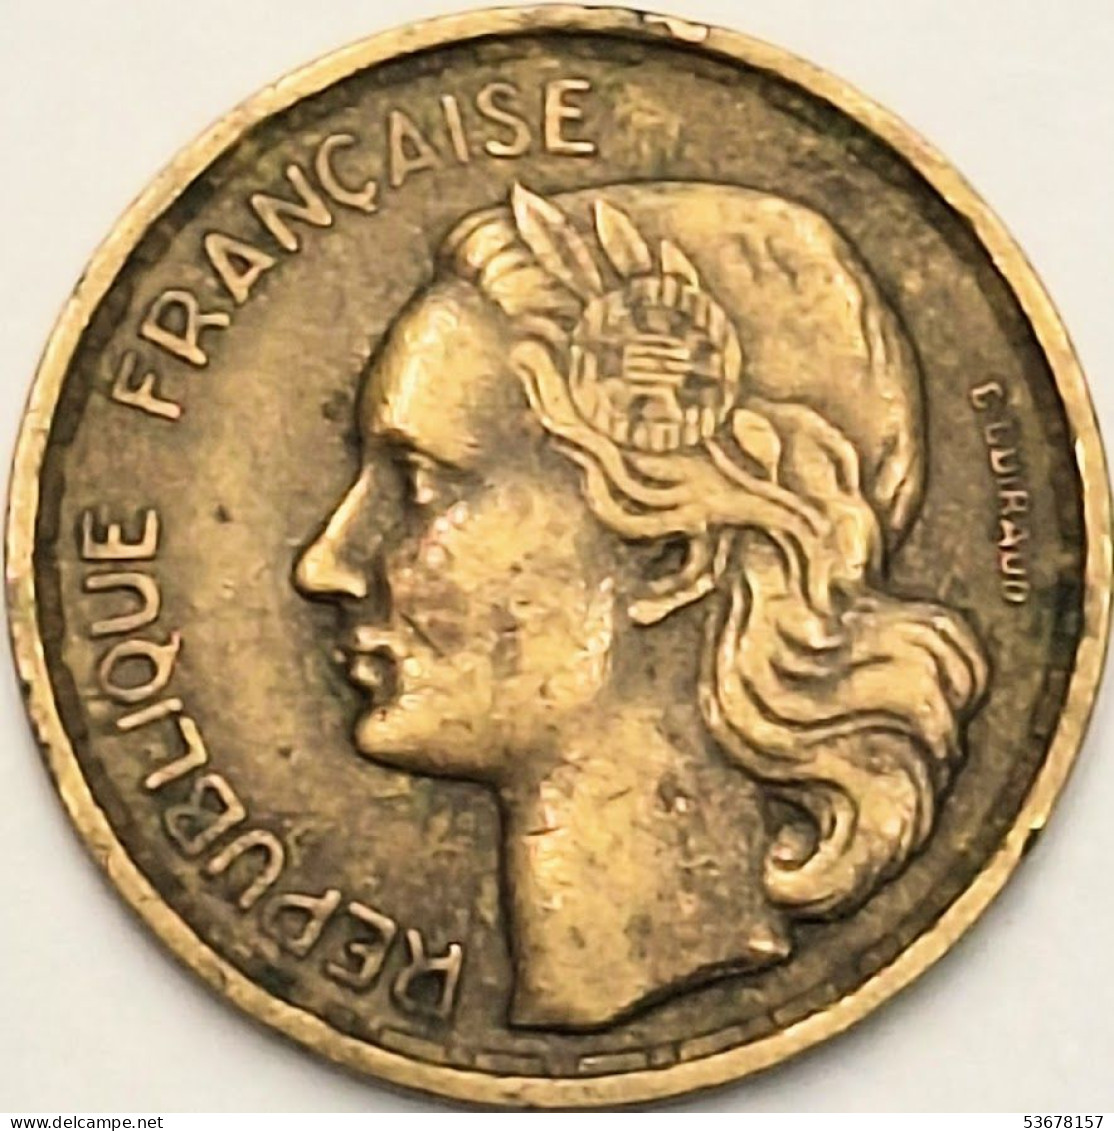 France - 10 Francs 1953, KM# 915.1 (#4146) - 10 Francs